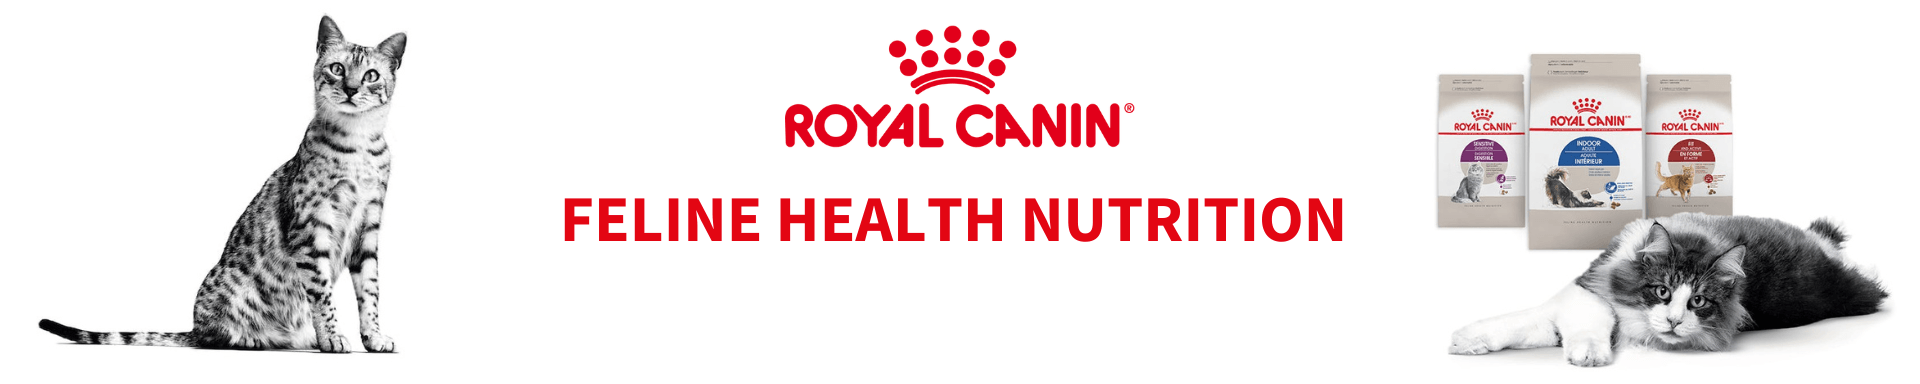 Royal Canin Feline Health Nutrition - The Pets Club